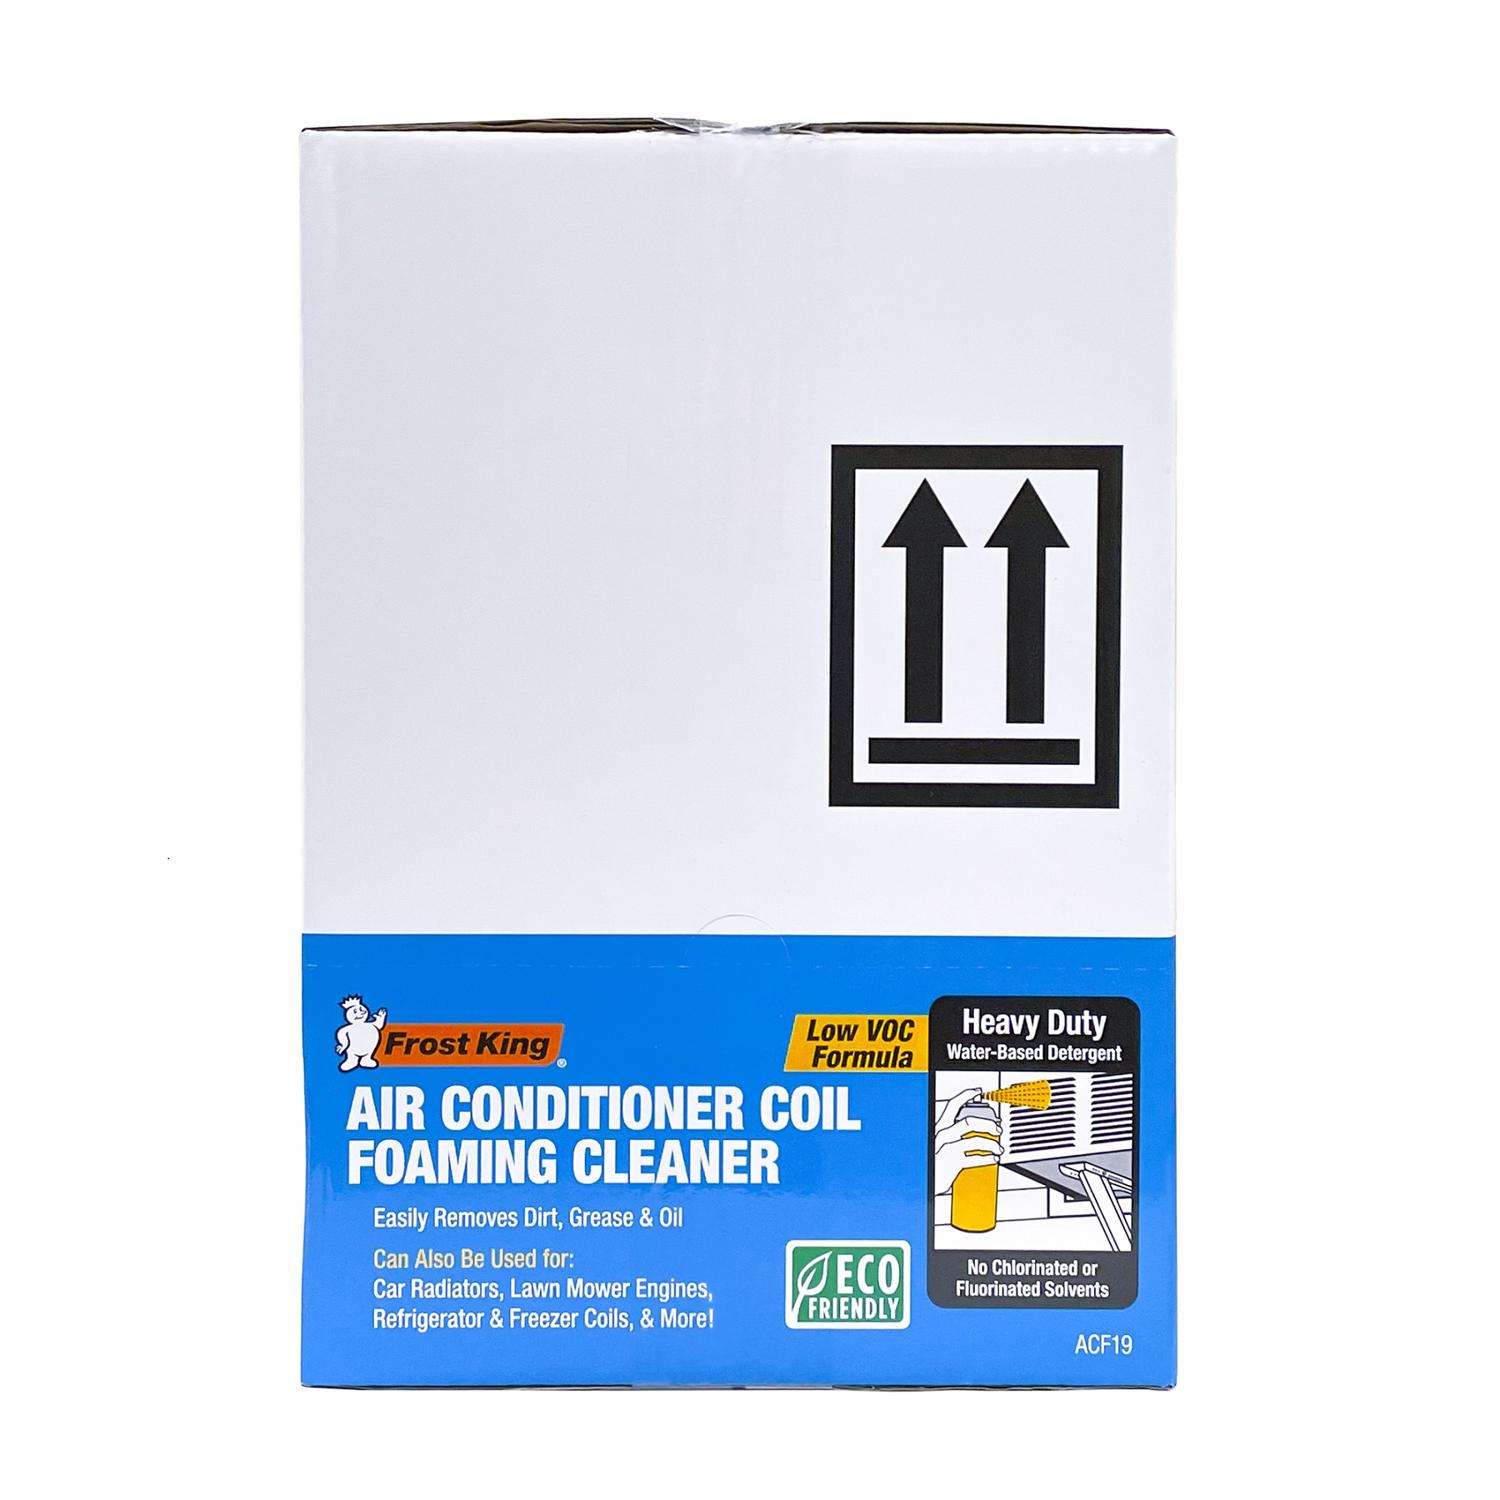 WEB Web 19 oz Condenser Coil Cleaner - Professional Grade Foam